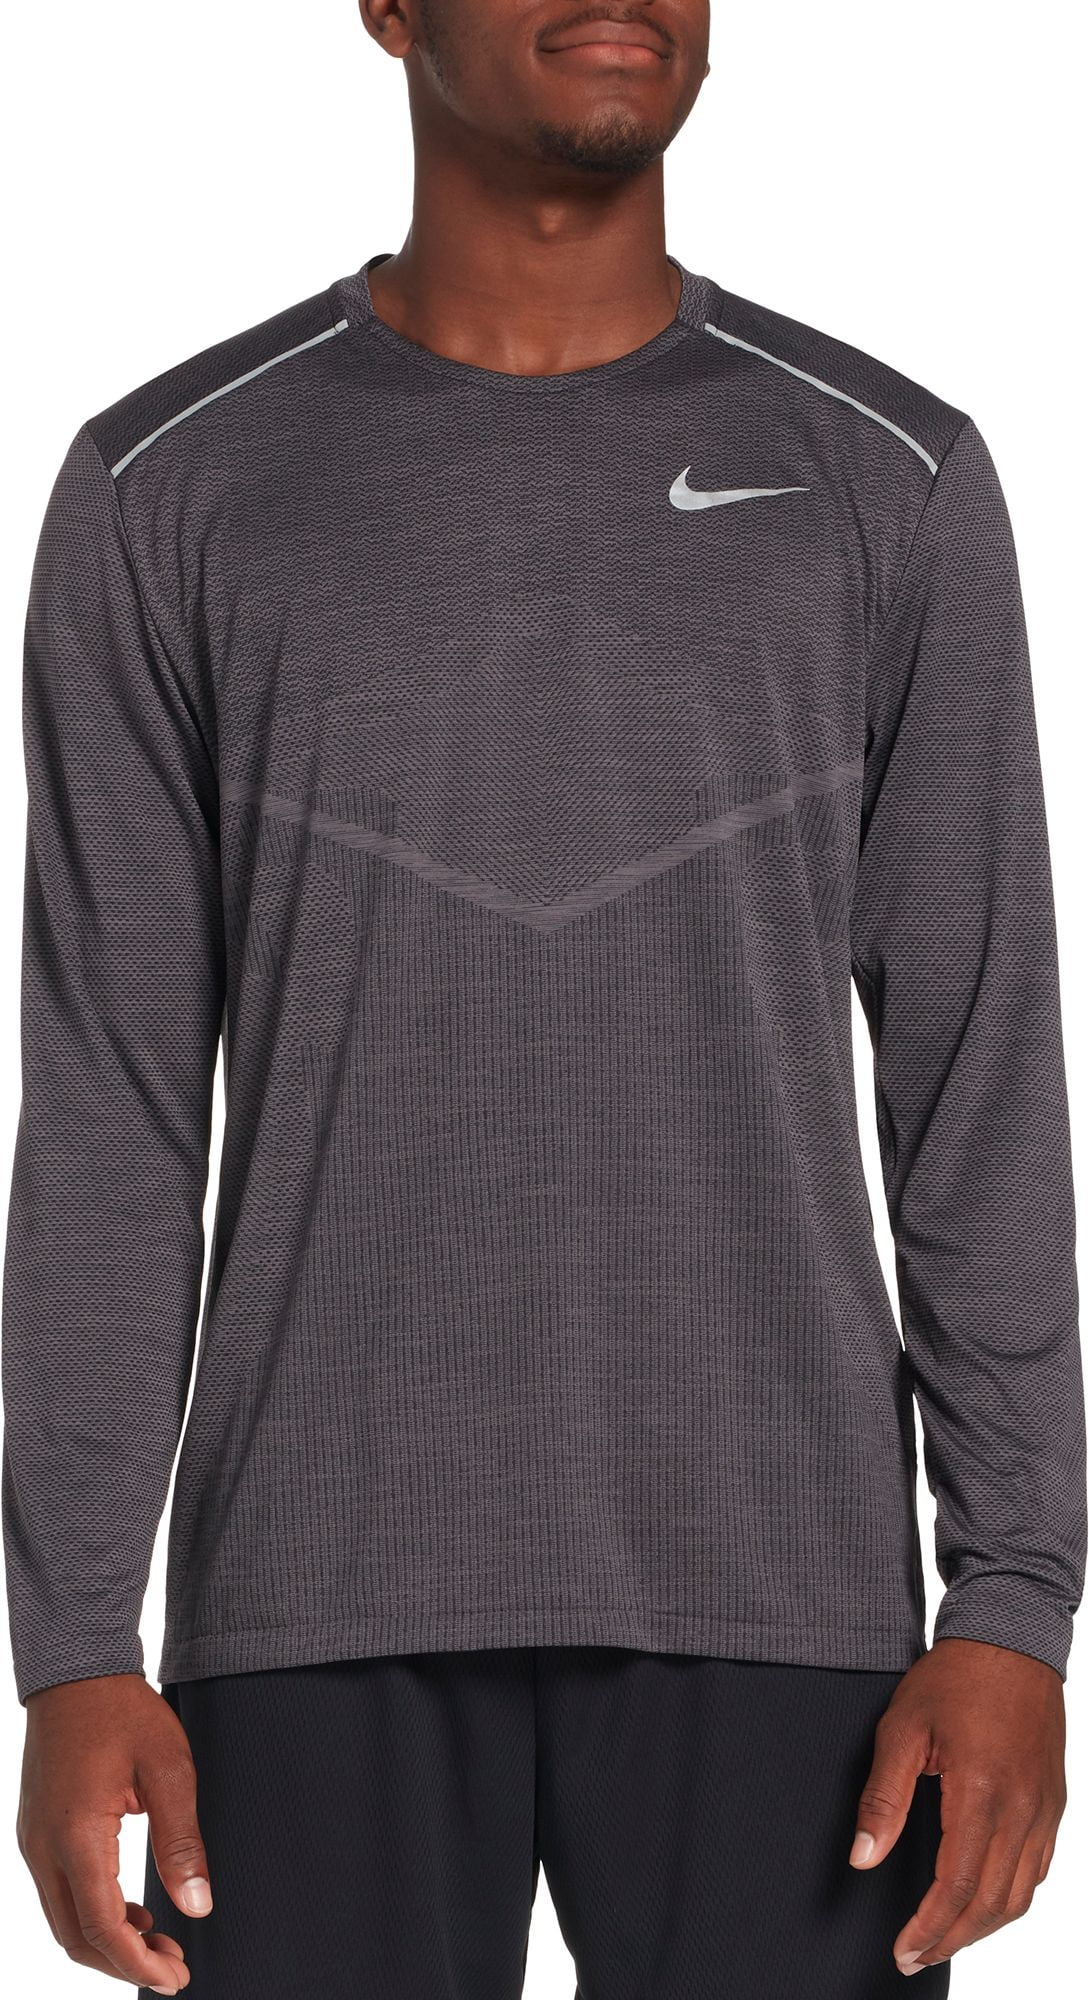 Nike - Nike Men's TechKnit Ultra Running Long Sleeve Shirt - Walmart ...